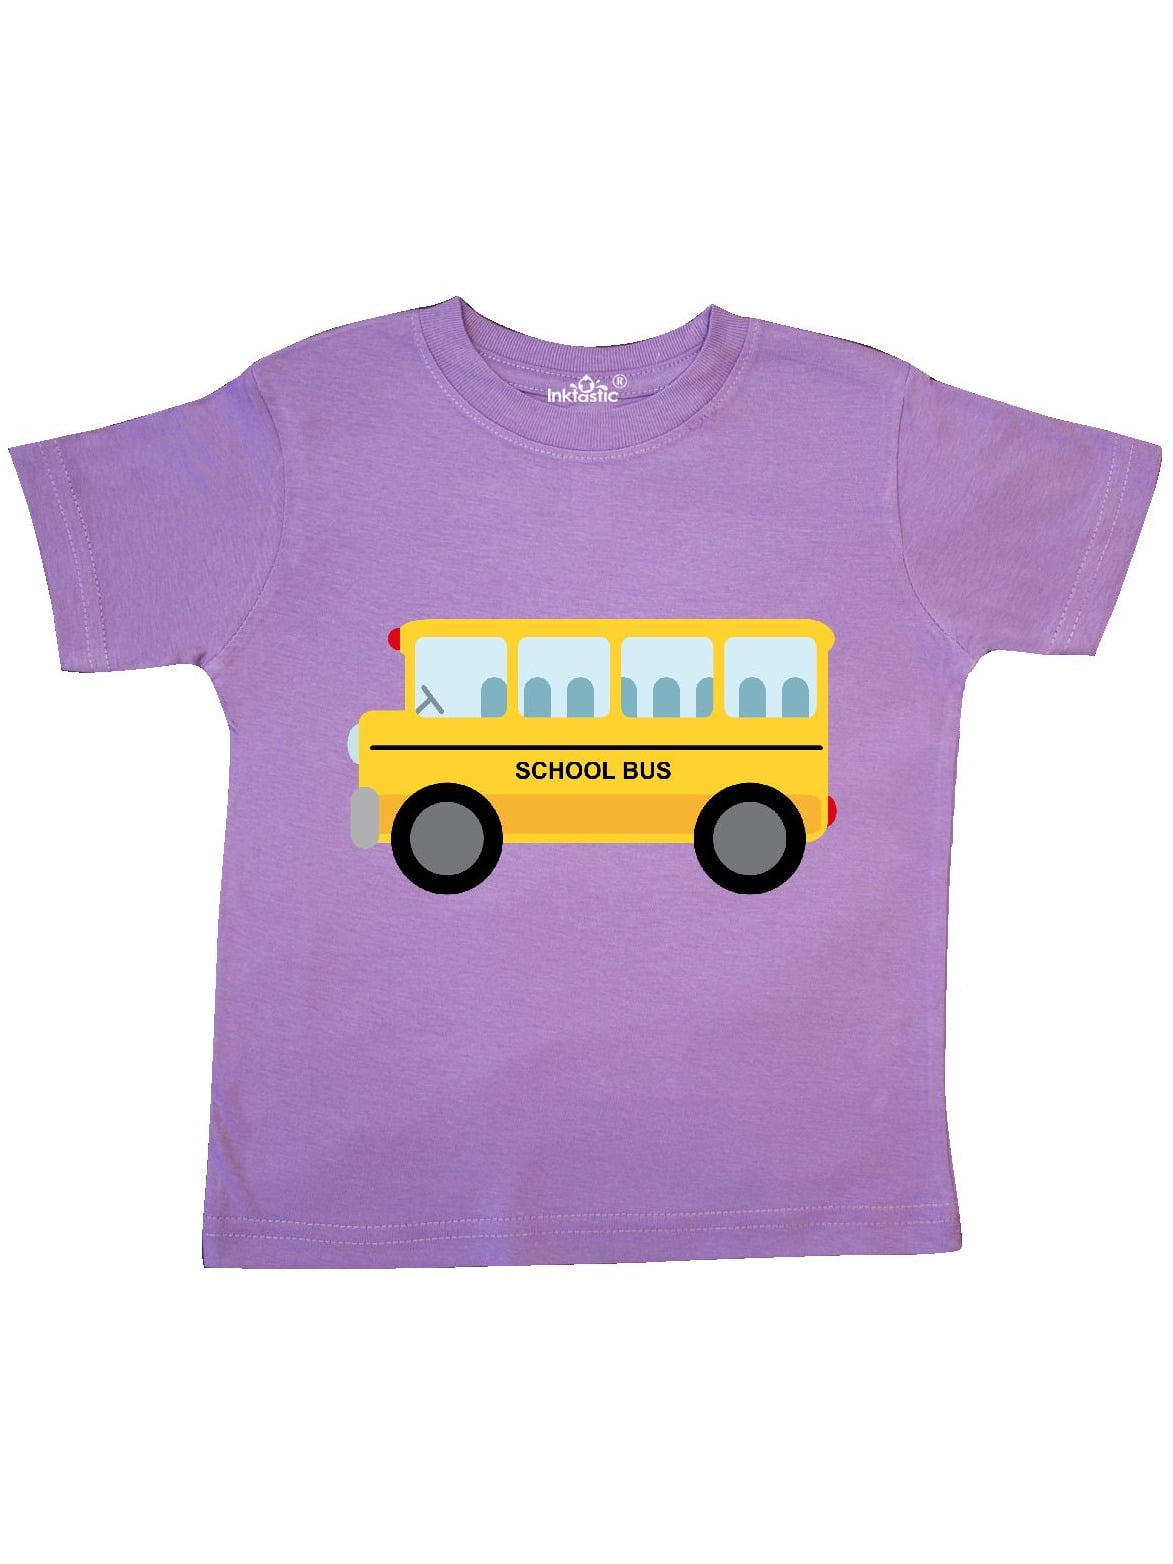 School Bus Toddler T-Shirt - Walmart.com